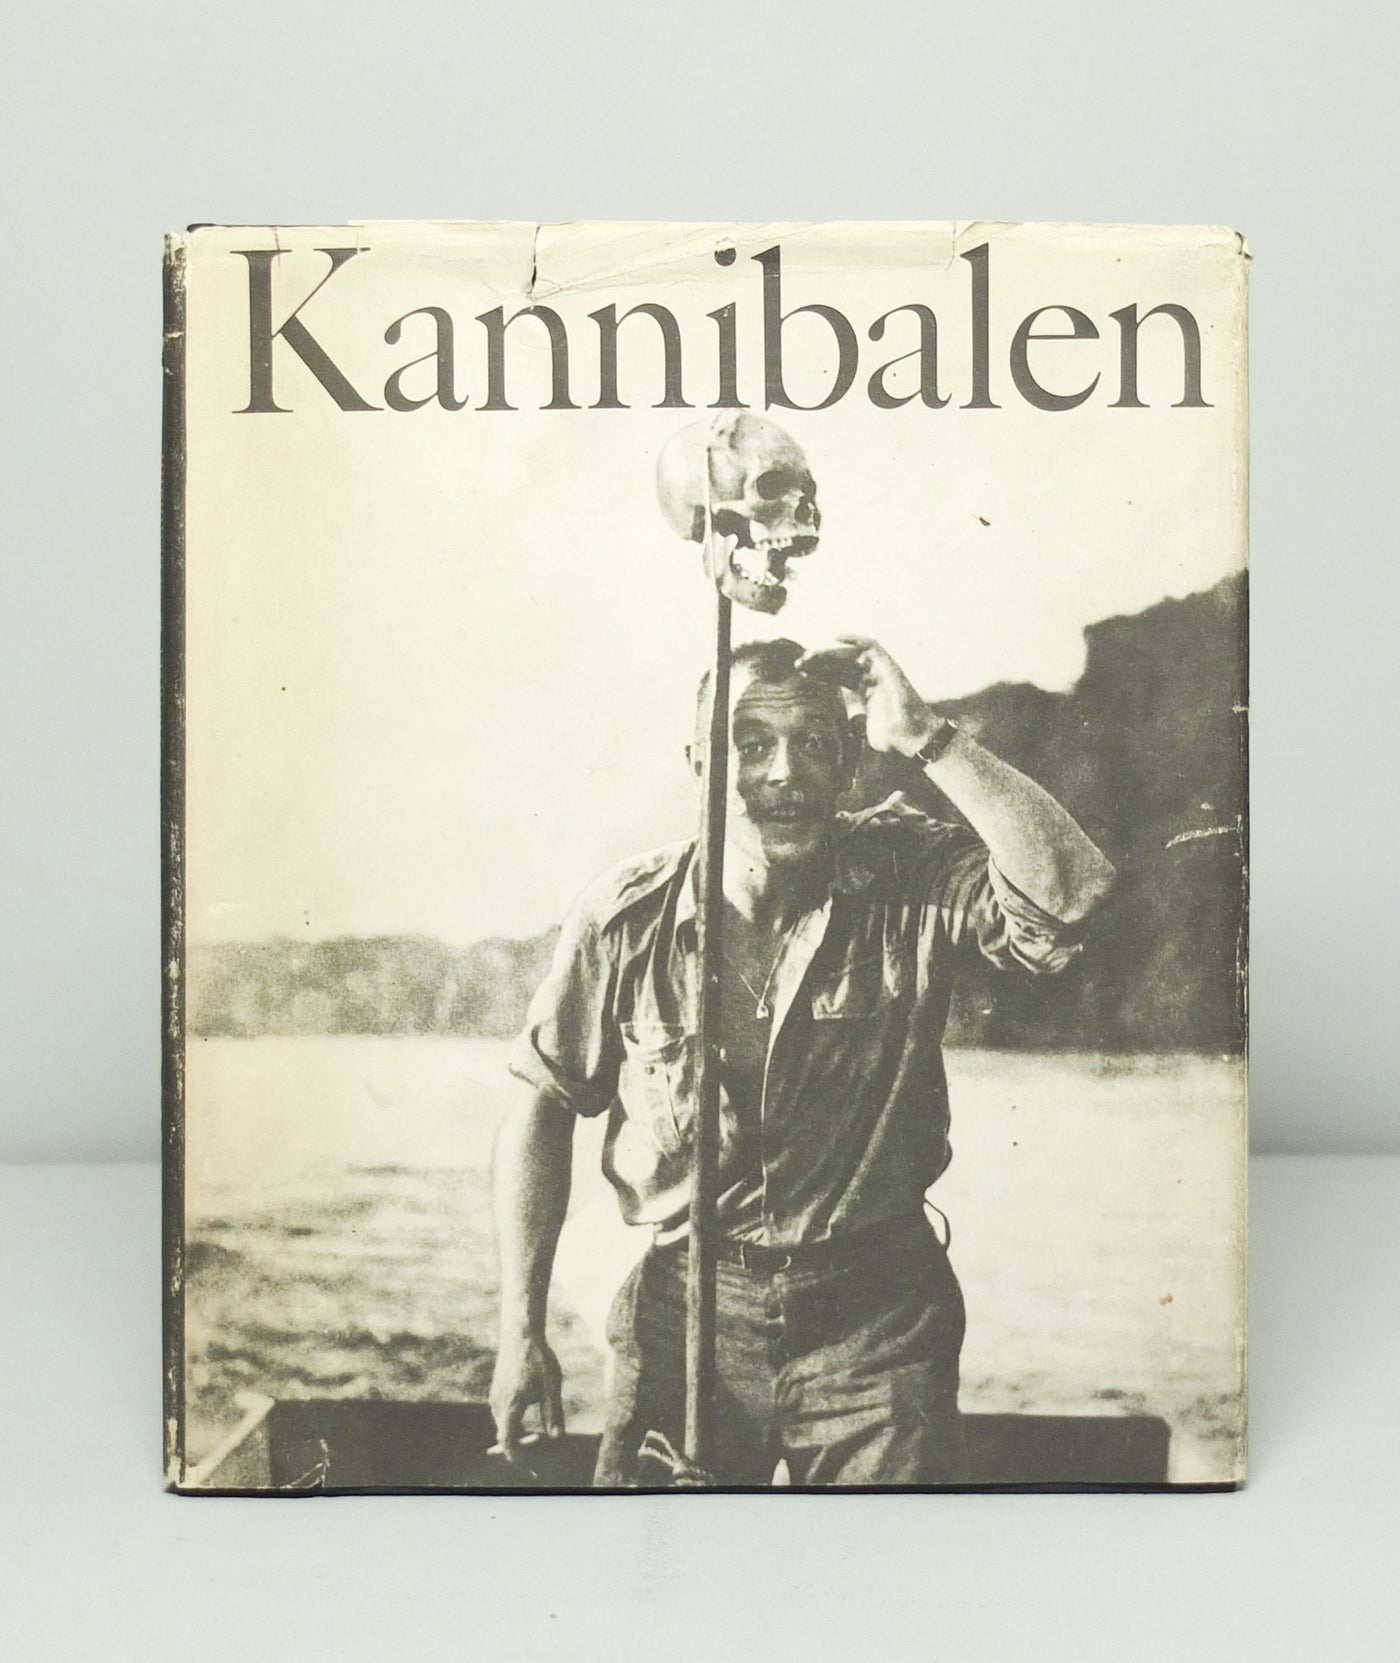 Kannibalen by Walter Heynowski & Gerhard Scheumann}